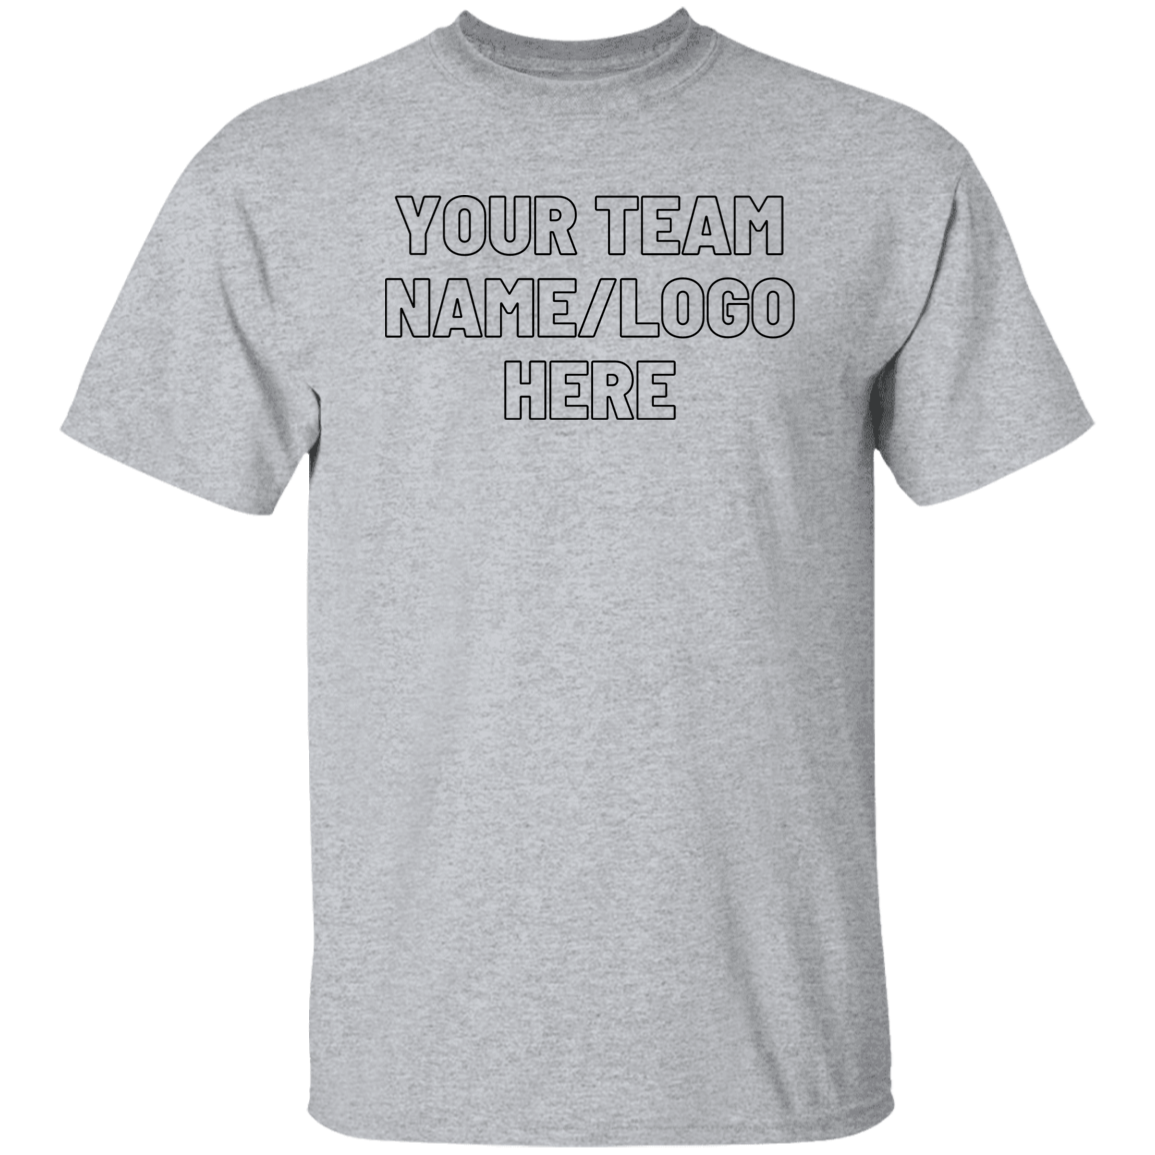 Team Shirt Template 5.3 oz. T-Shirt